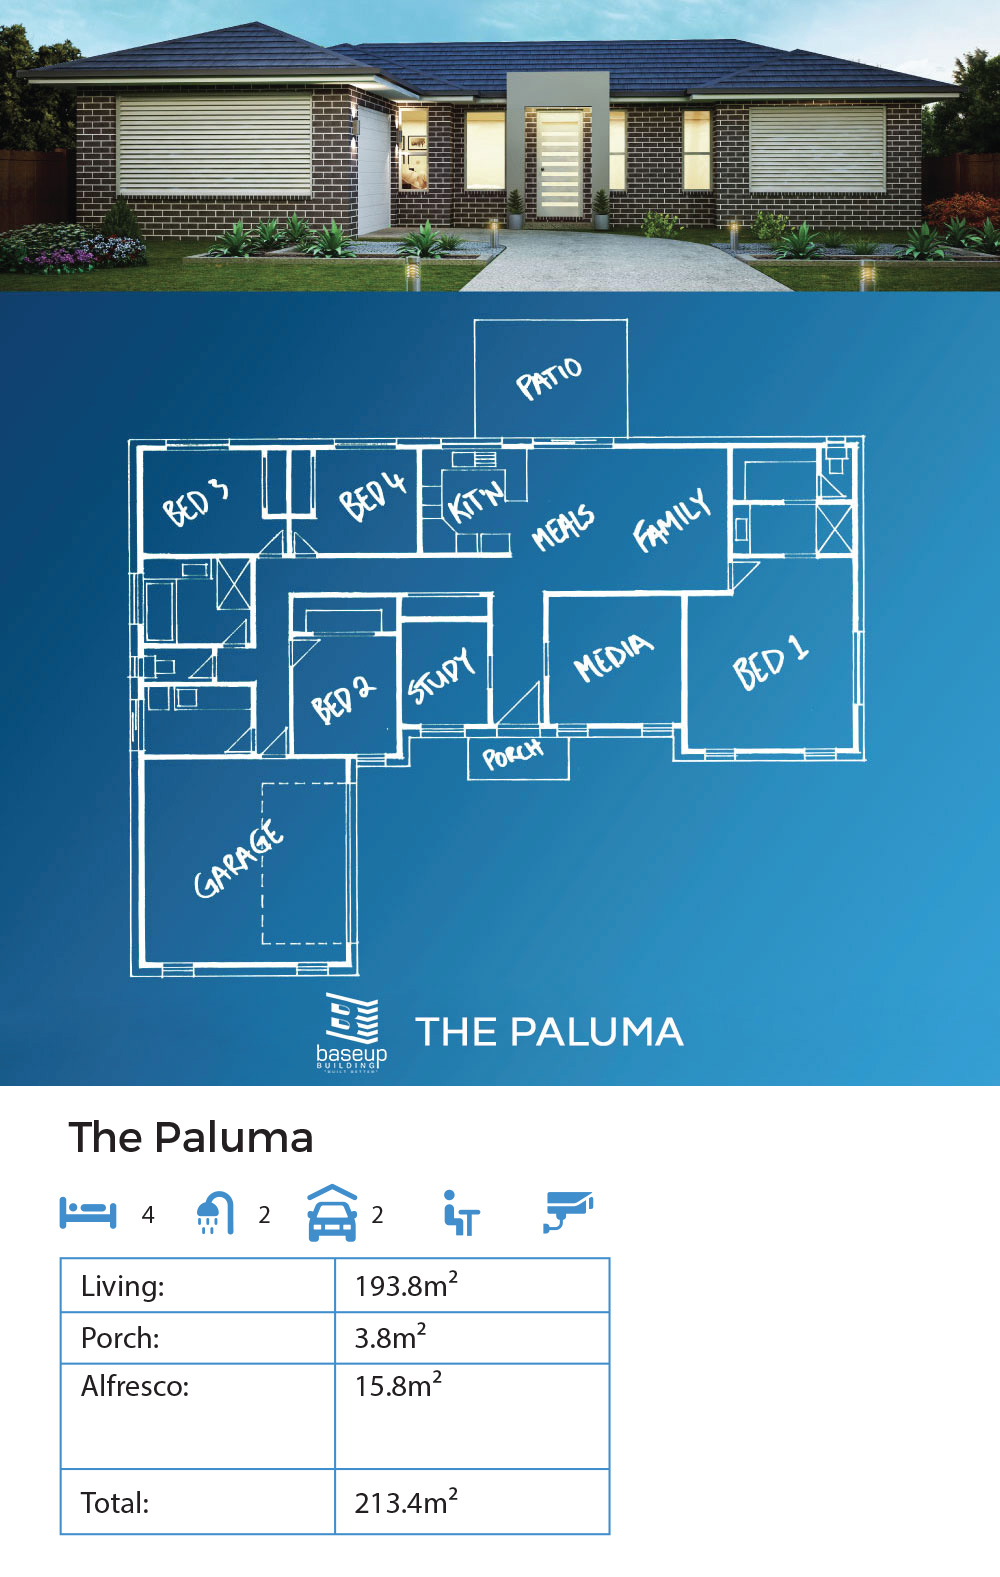 The Paluma